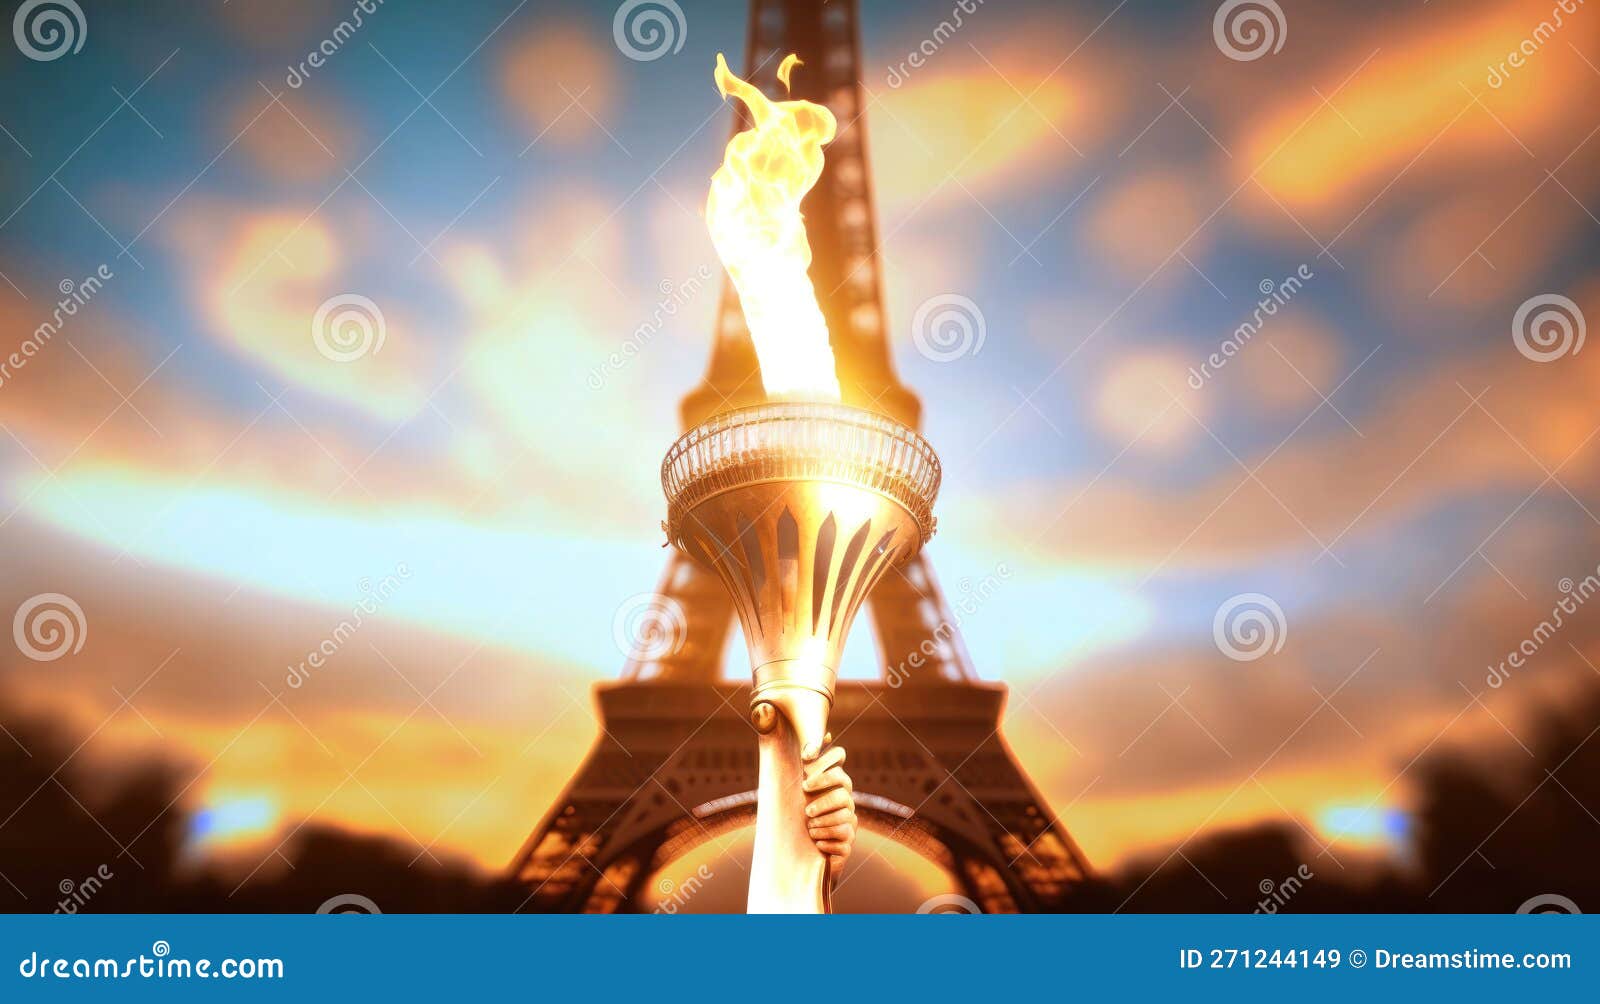 Paris 2024. Trop chère, la flamme olympique n'est pas la bienvenue dans  tous les départements de France